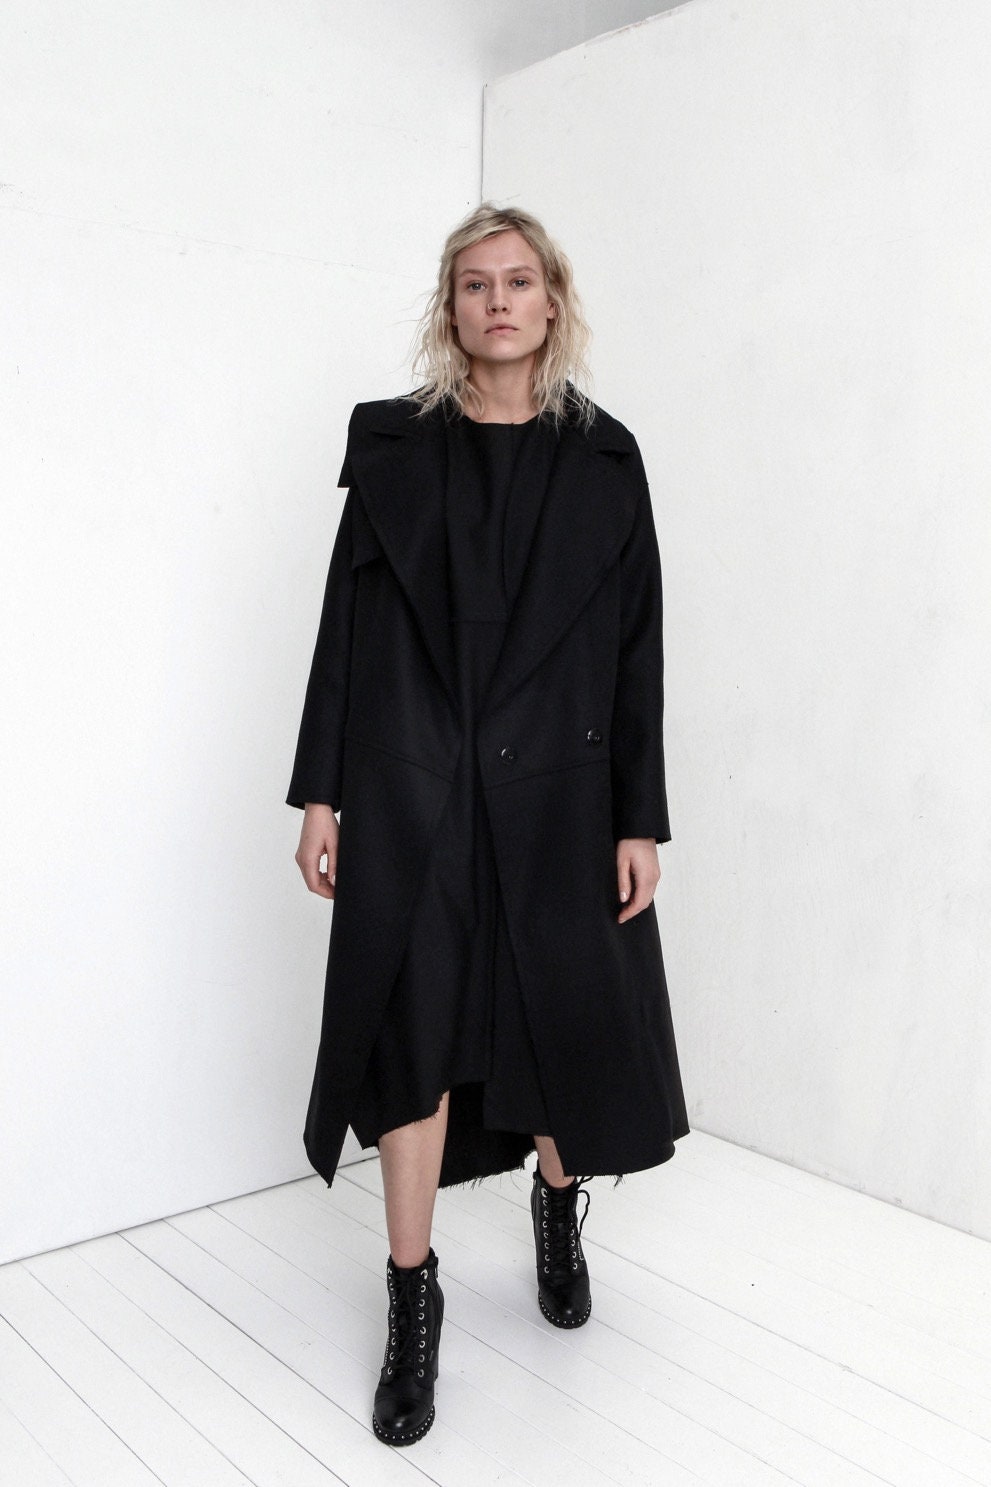 Black Wool Coat / Black Oversized Coat / Black Kimono Coat / | Etsy